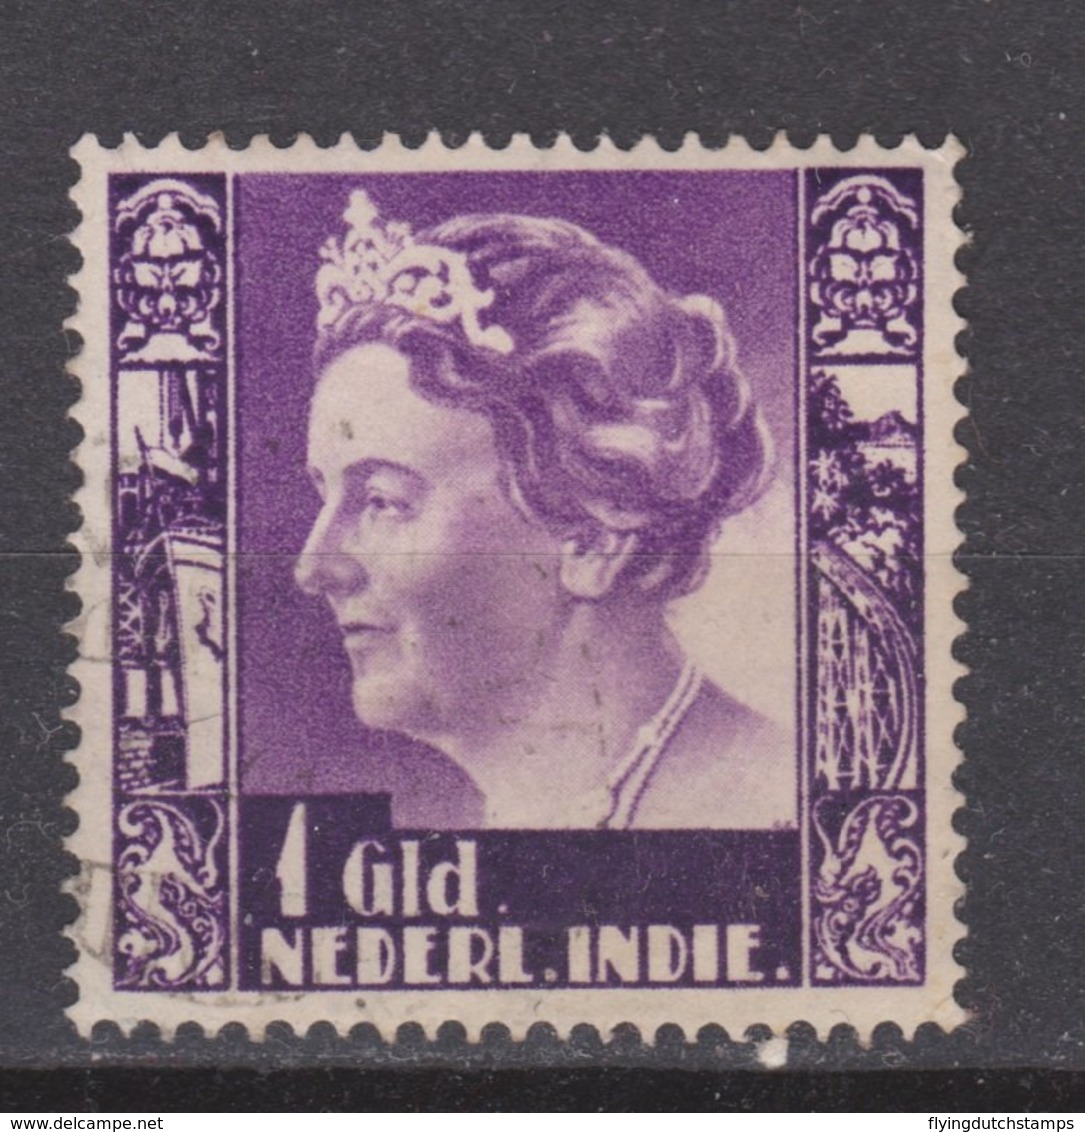 Nederlands Indie 263 Used Watermark ;  Koningin Queen Reine Reina Wilhelmina 1938 NETHERLANDS INDIES PER PIECE - Nederlands-Indië